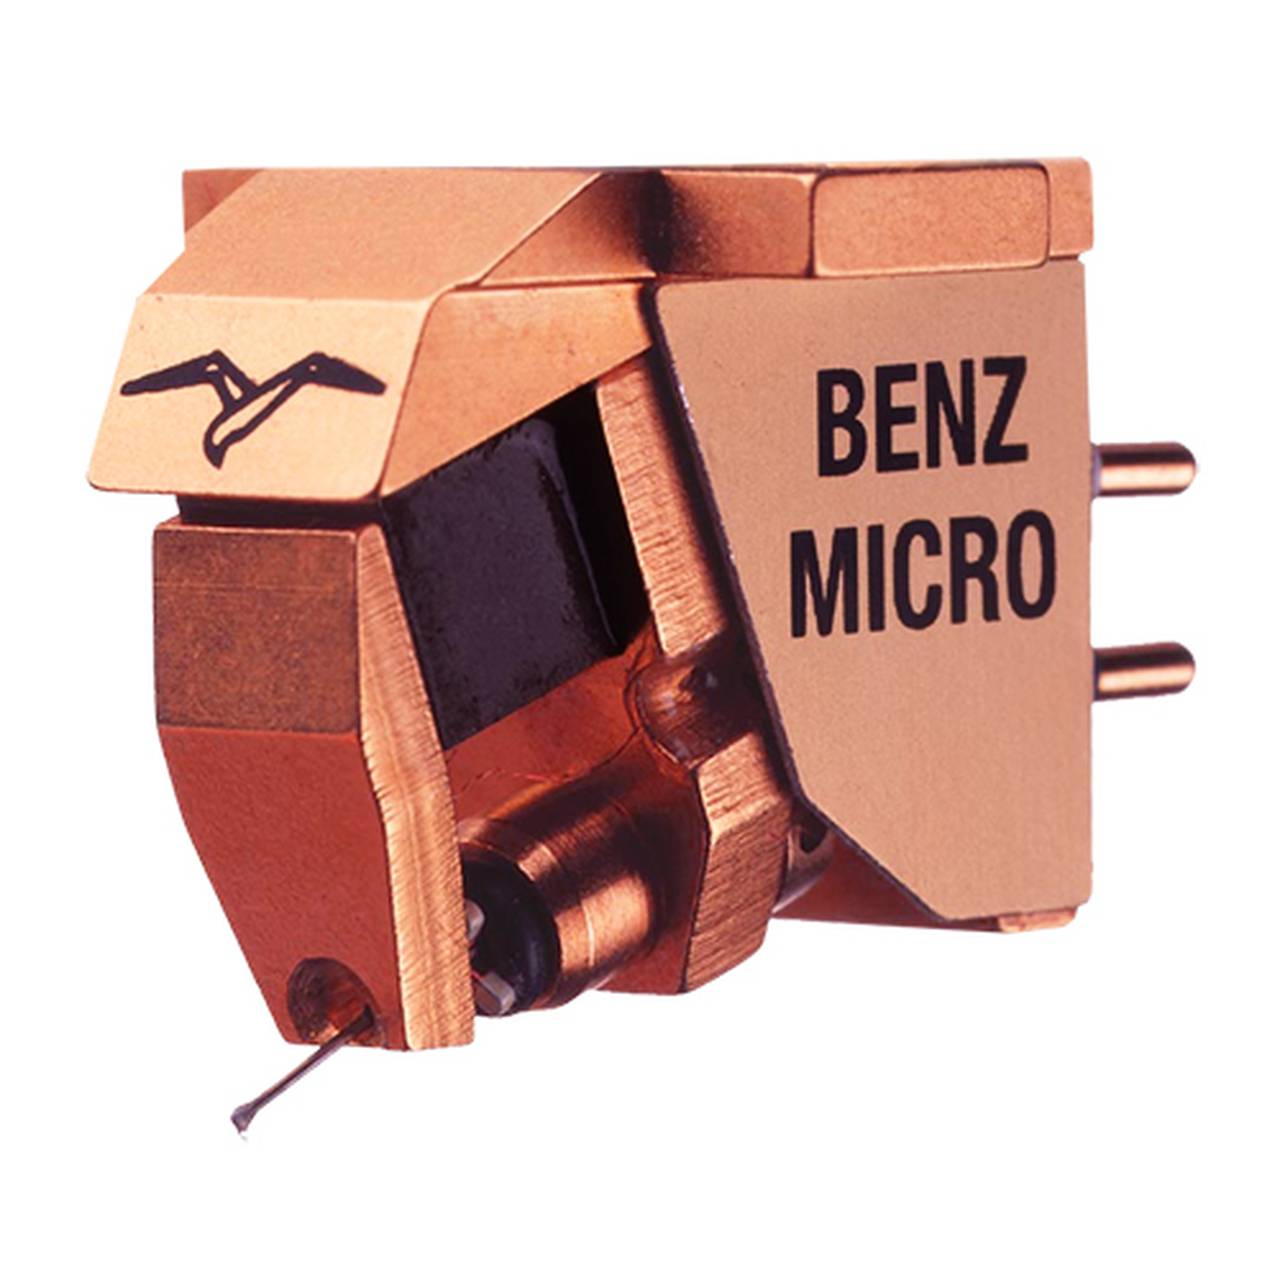 Benz Micro H 2.0